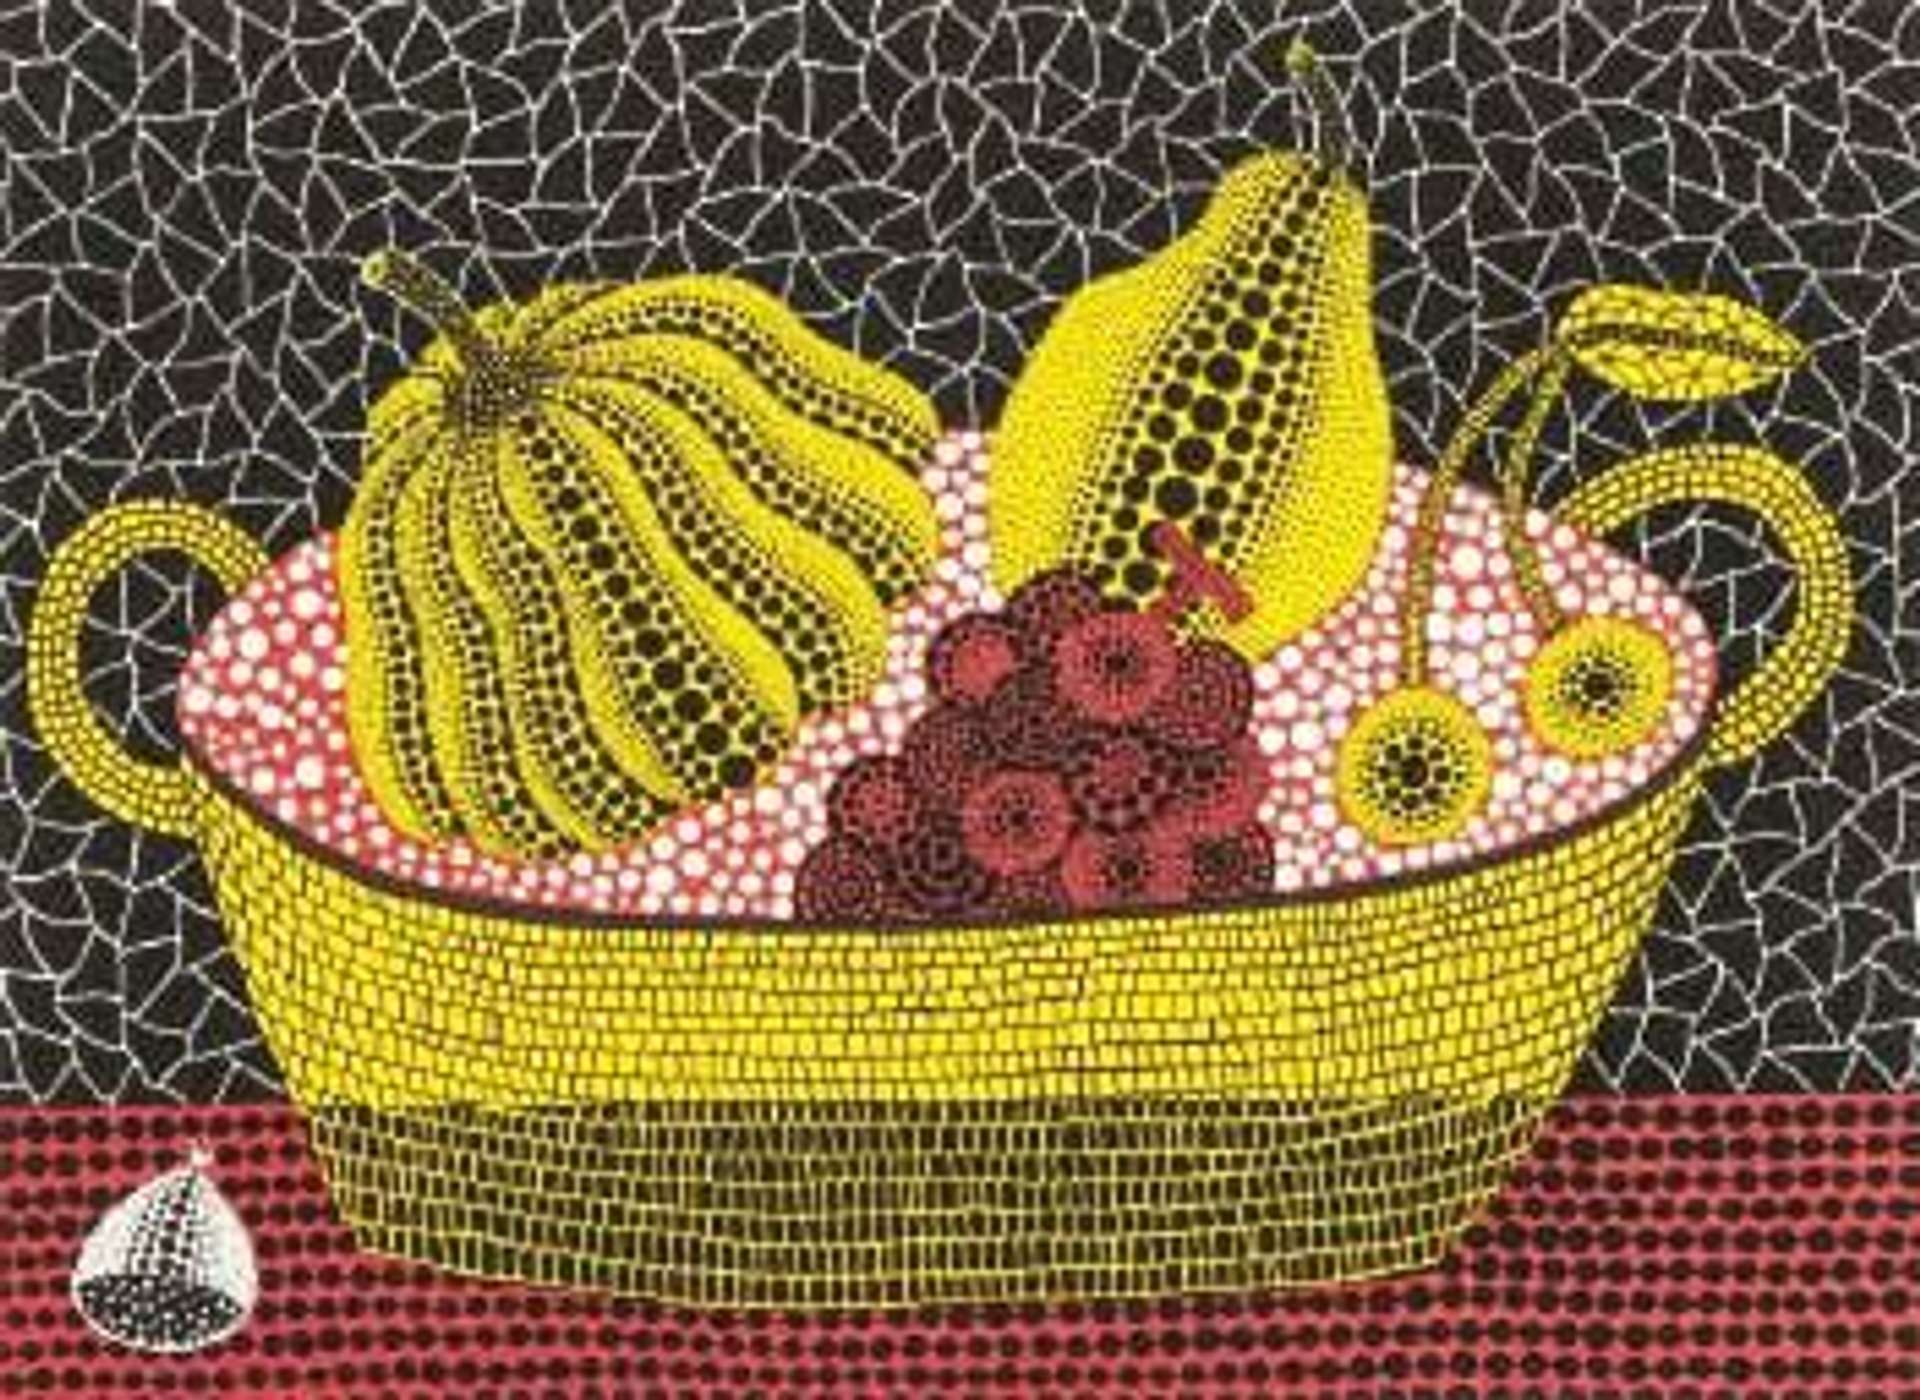 Pumpkin And Fruits - Signed Print by Yayoi Kusama 1993 - MyArtBroker